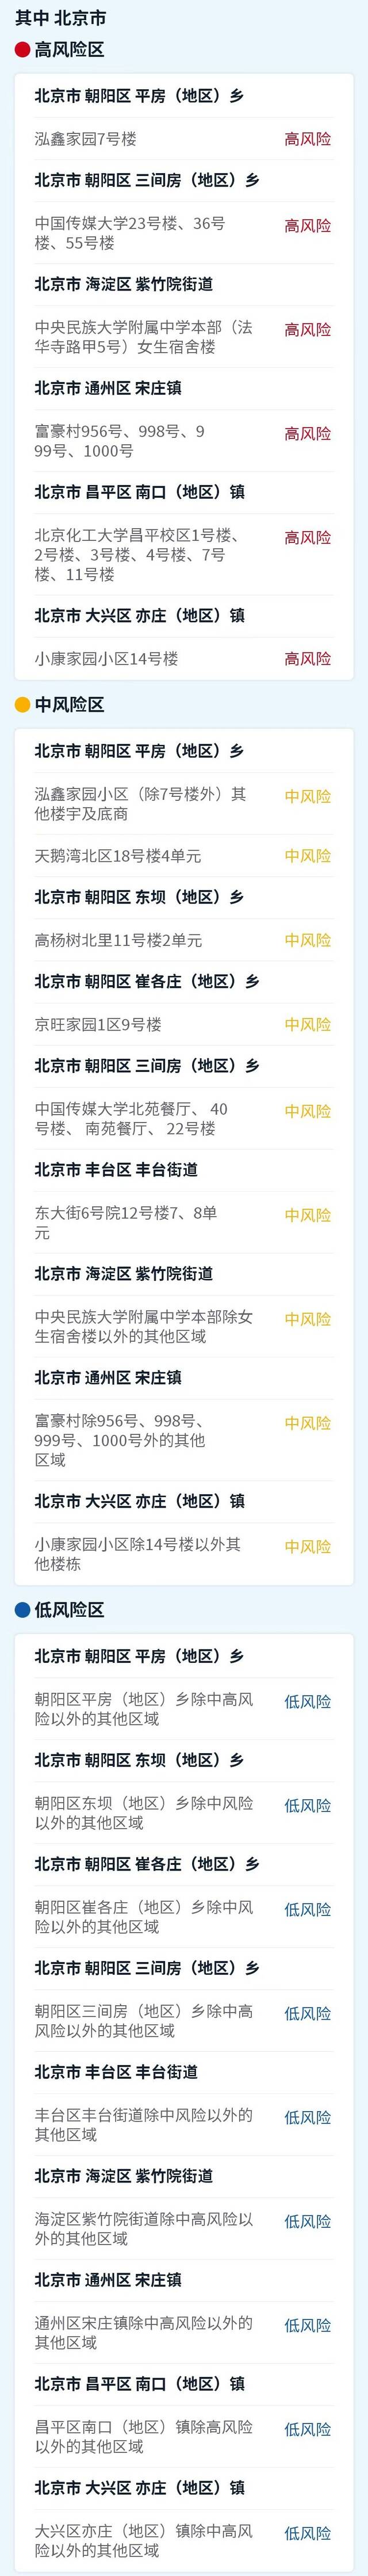 丰台区一个高风险区降级，北京现有高中风险区6+9个